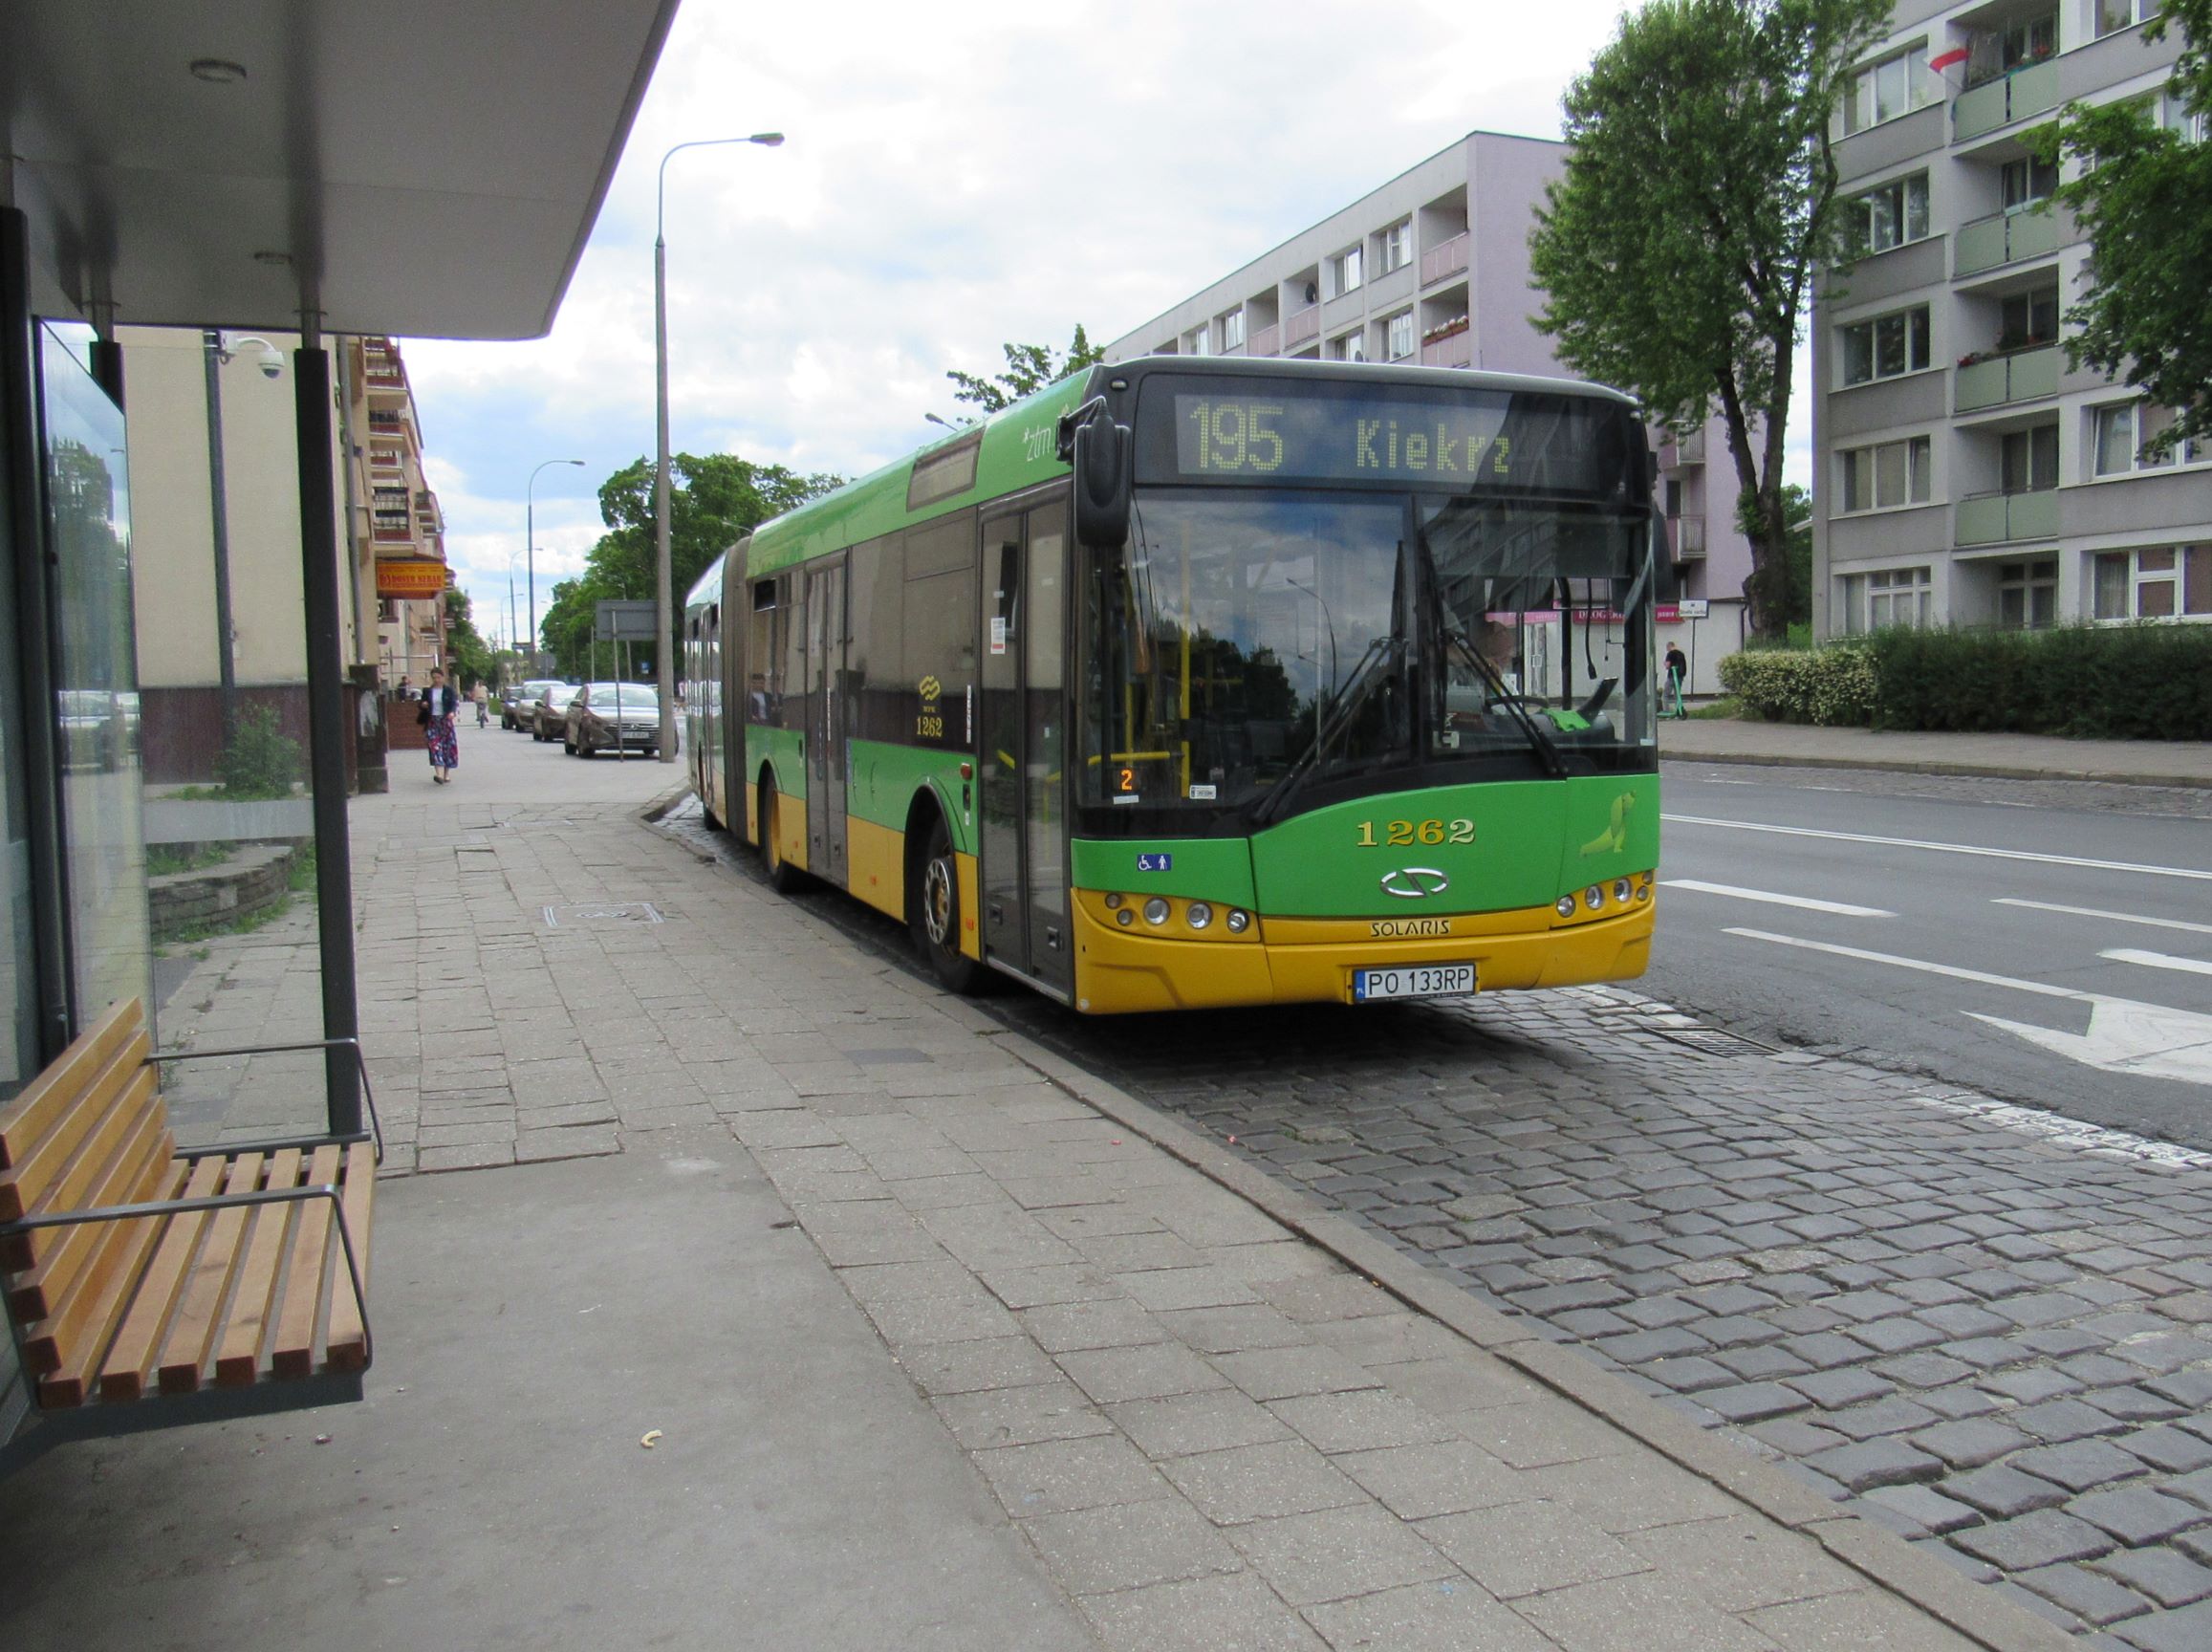 Linia 195 – od 6 lipca (poniedziałek) skrócenie trasy do przystanku Strzeszynek 